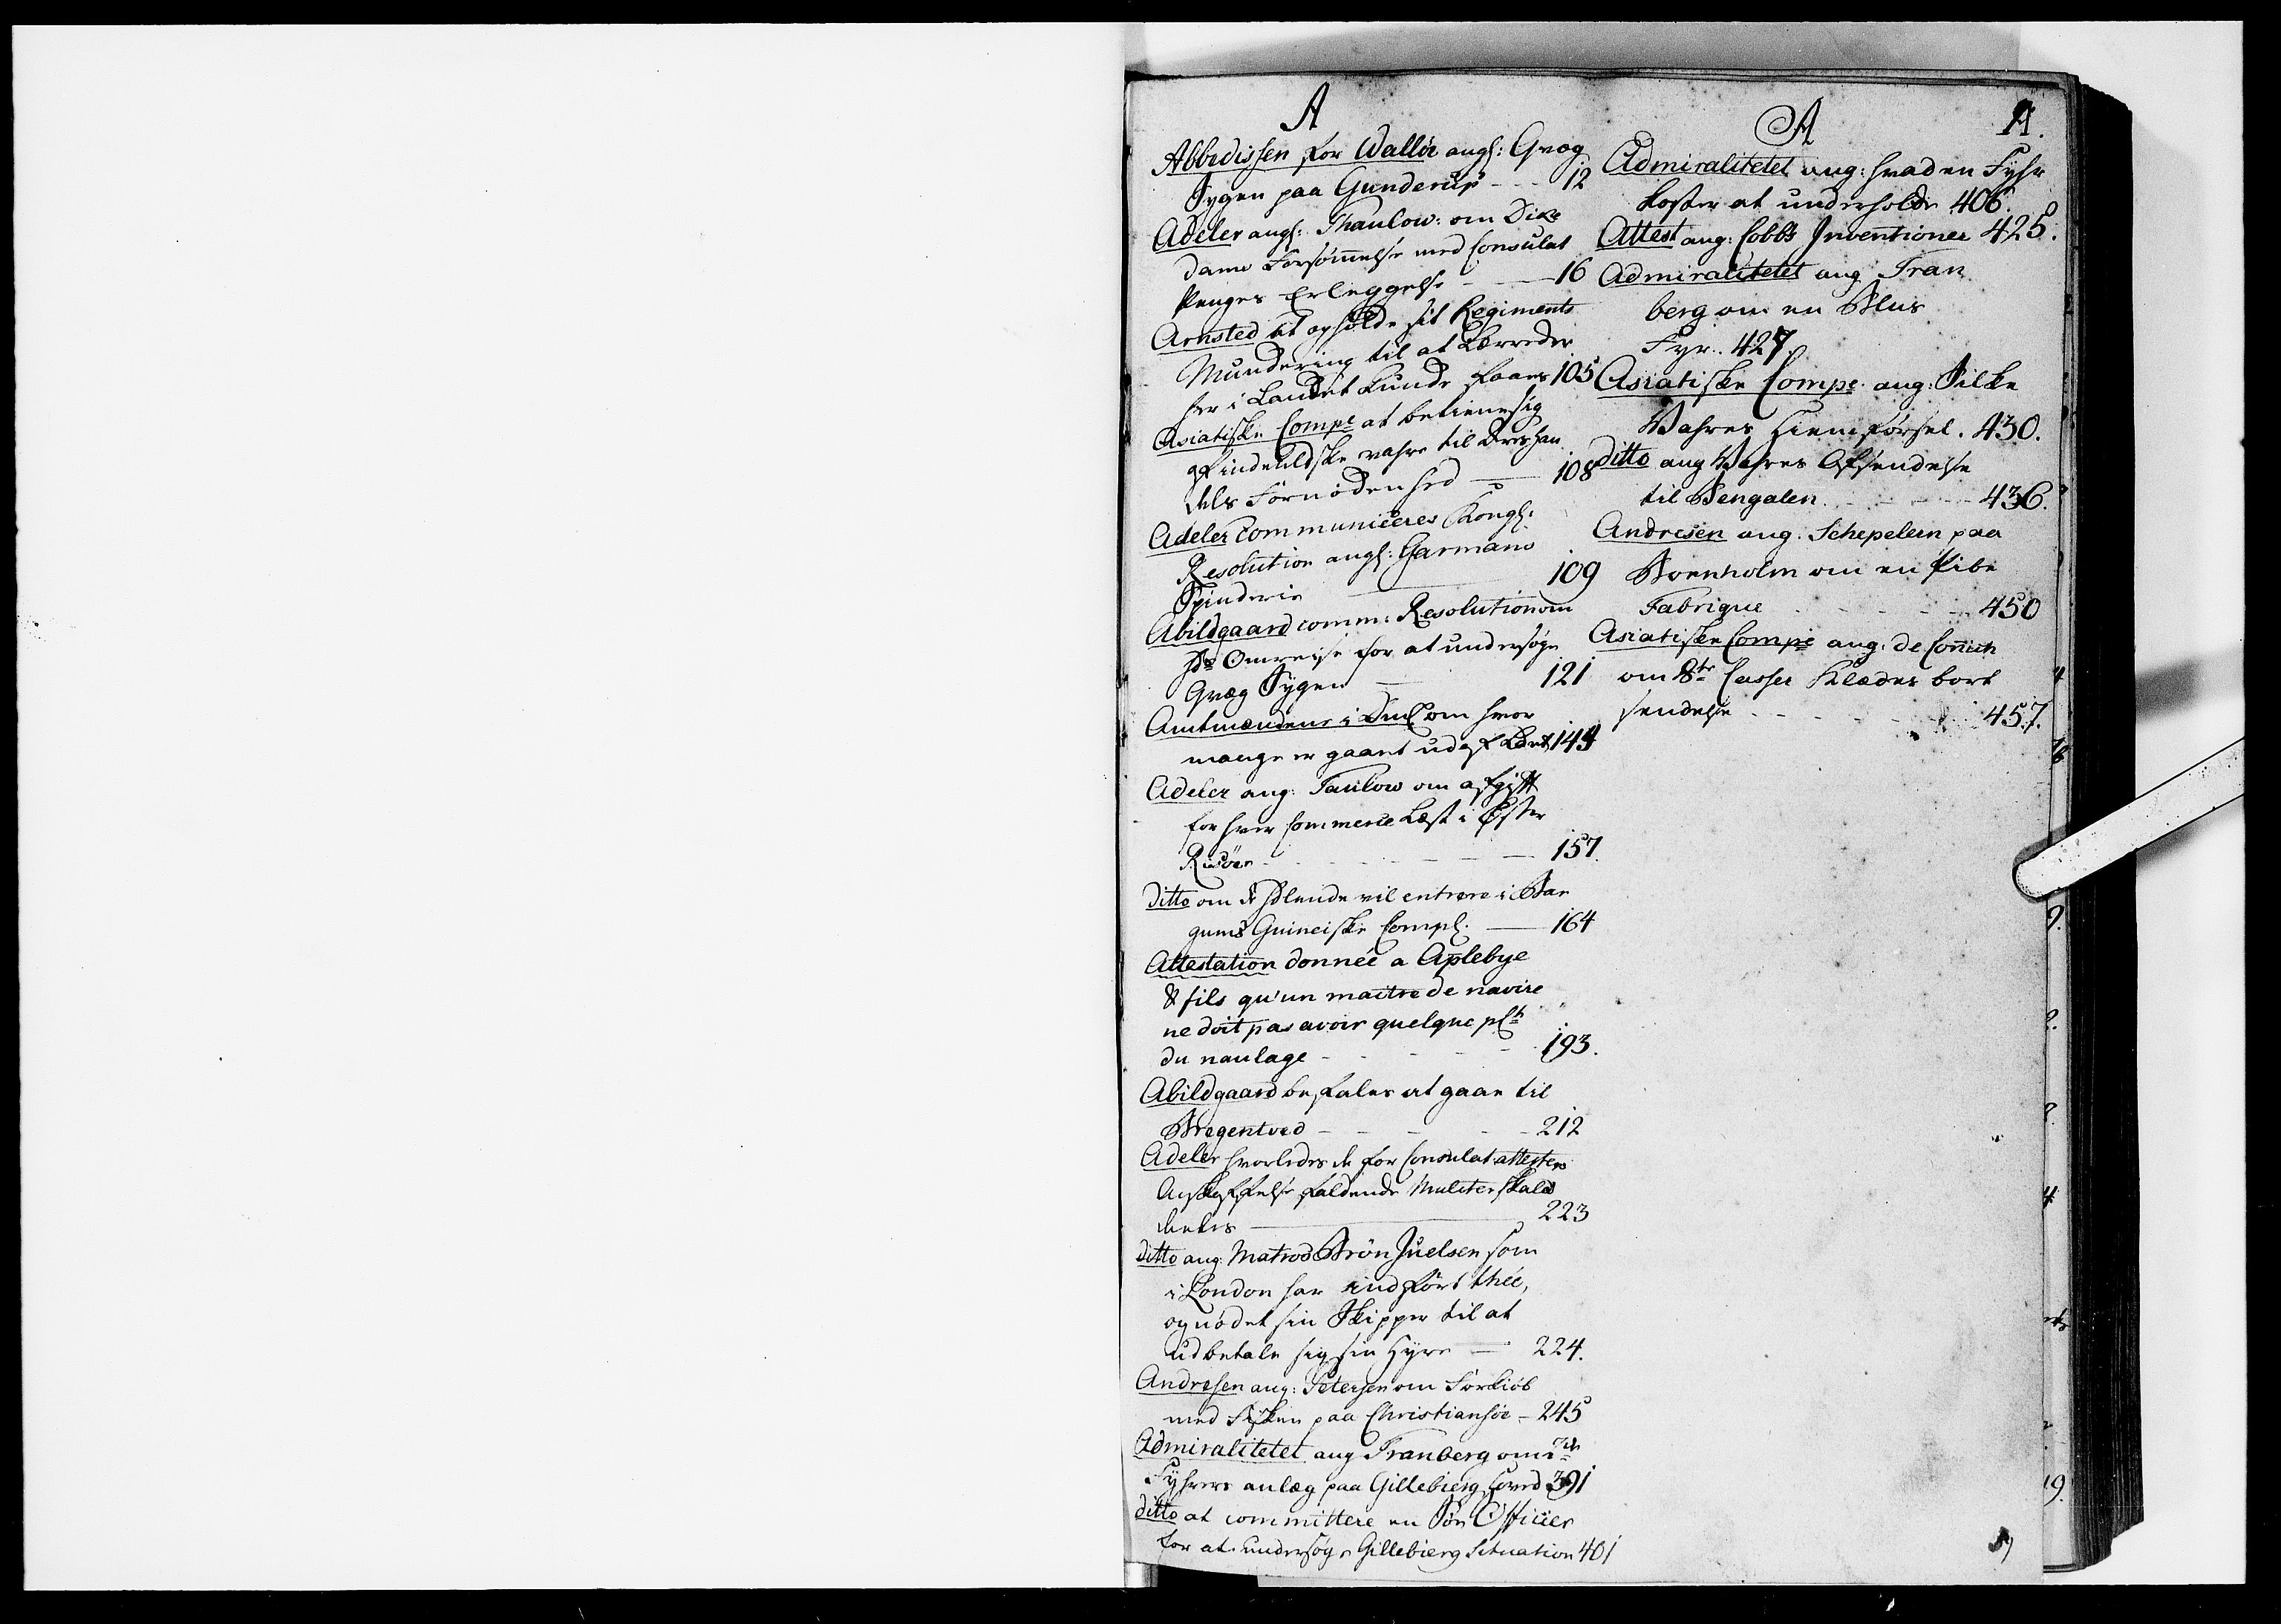 Kommercekollegiet, Dansk-Norske Sekretariat, DRA/A-0001/10/47: Dansk-Norsk kopibog, 1765-1769